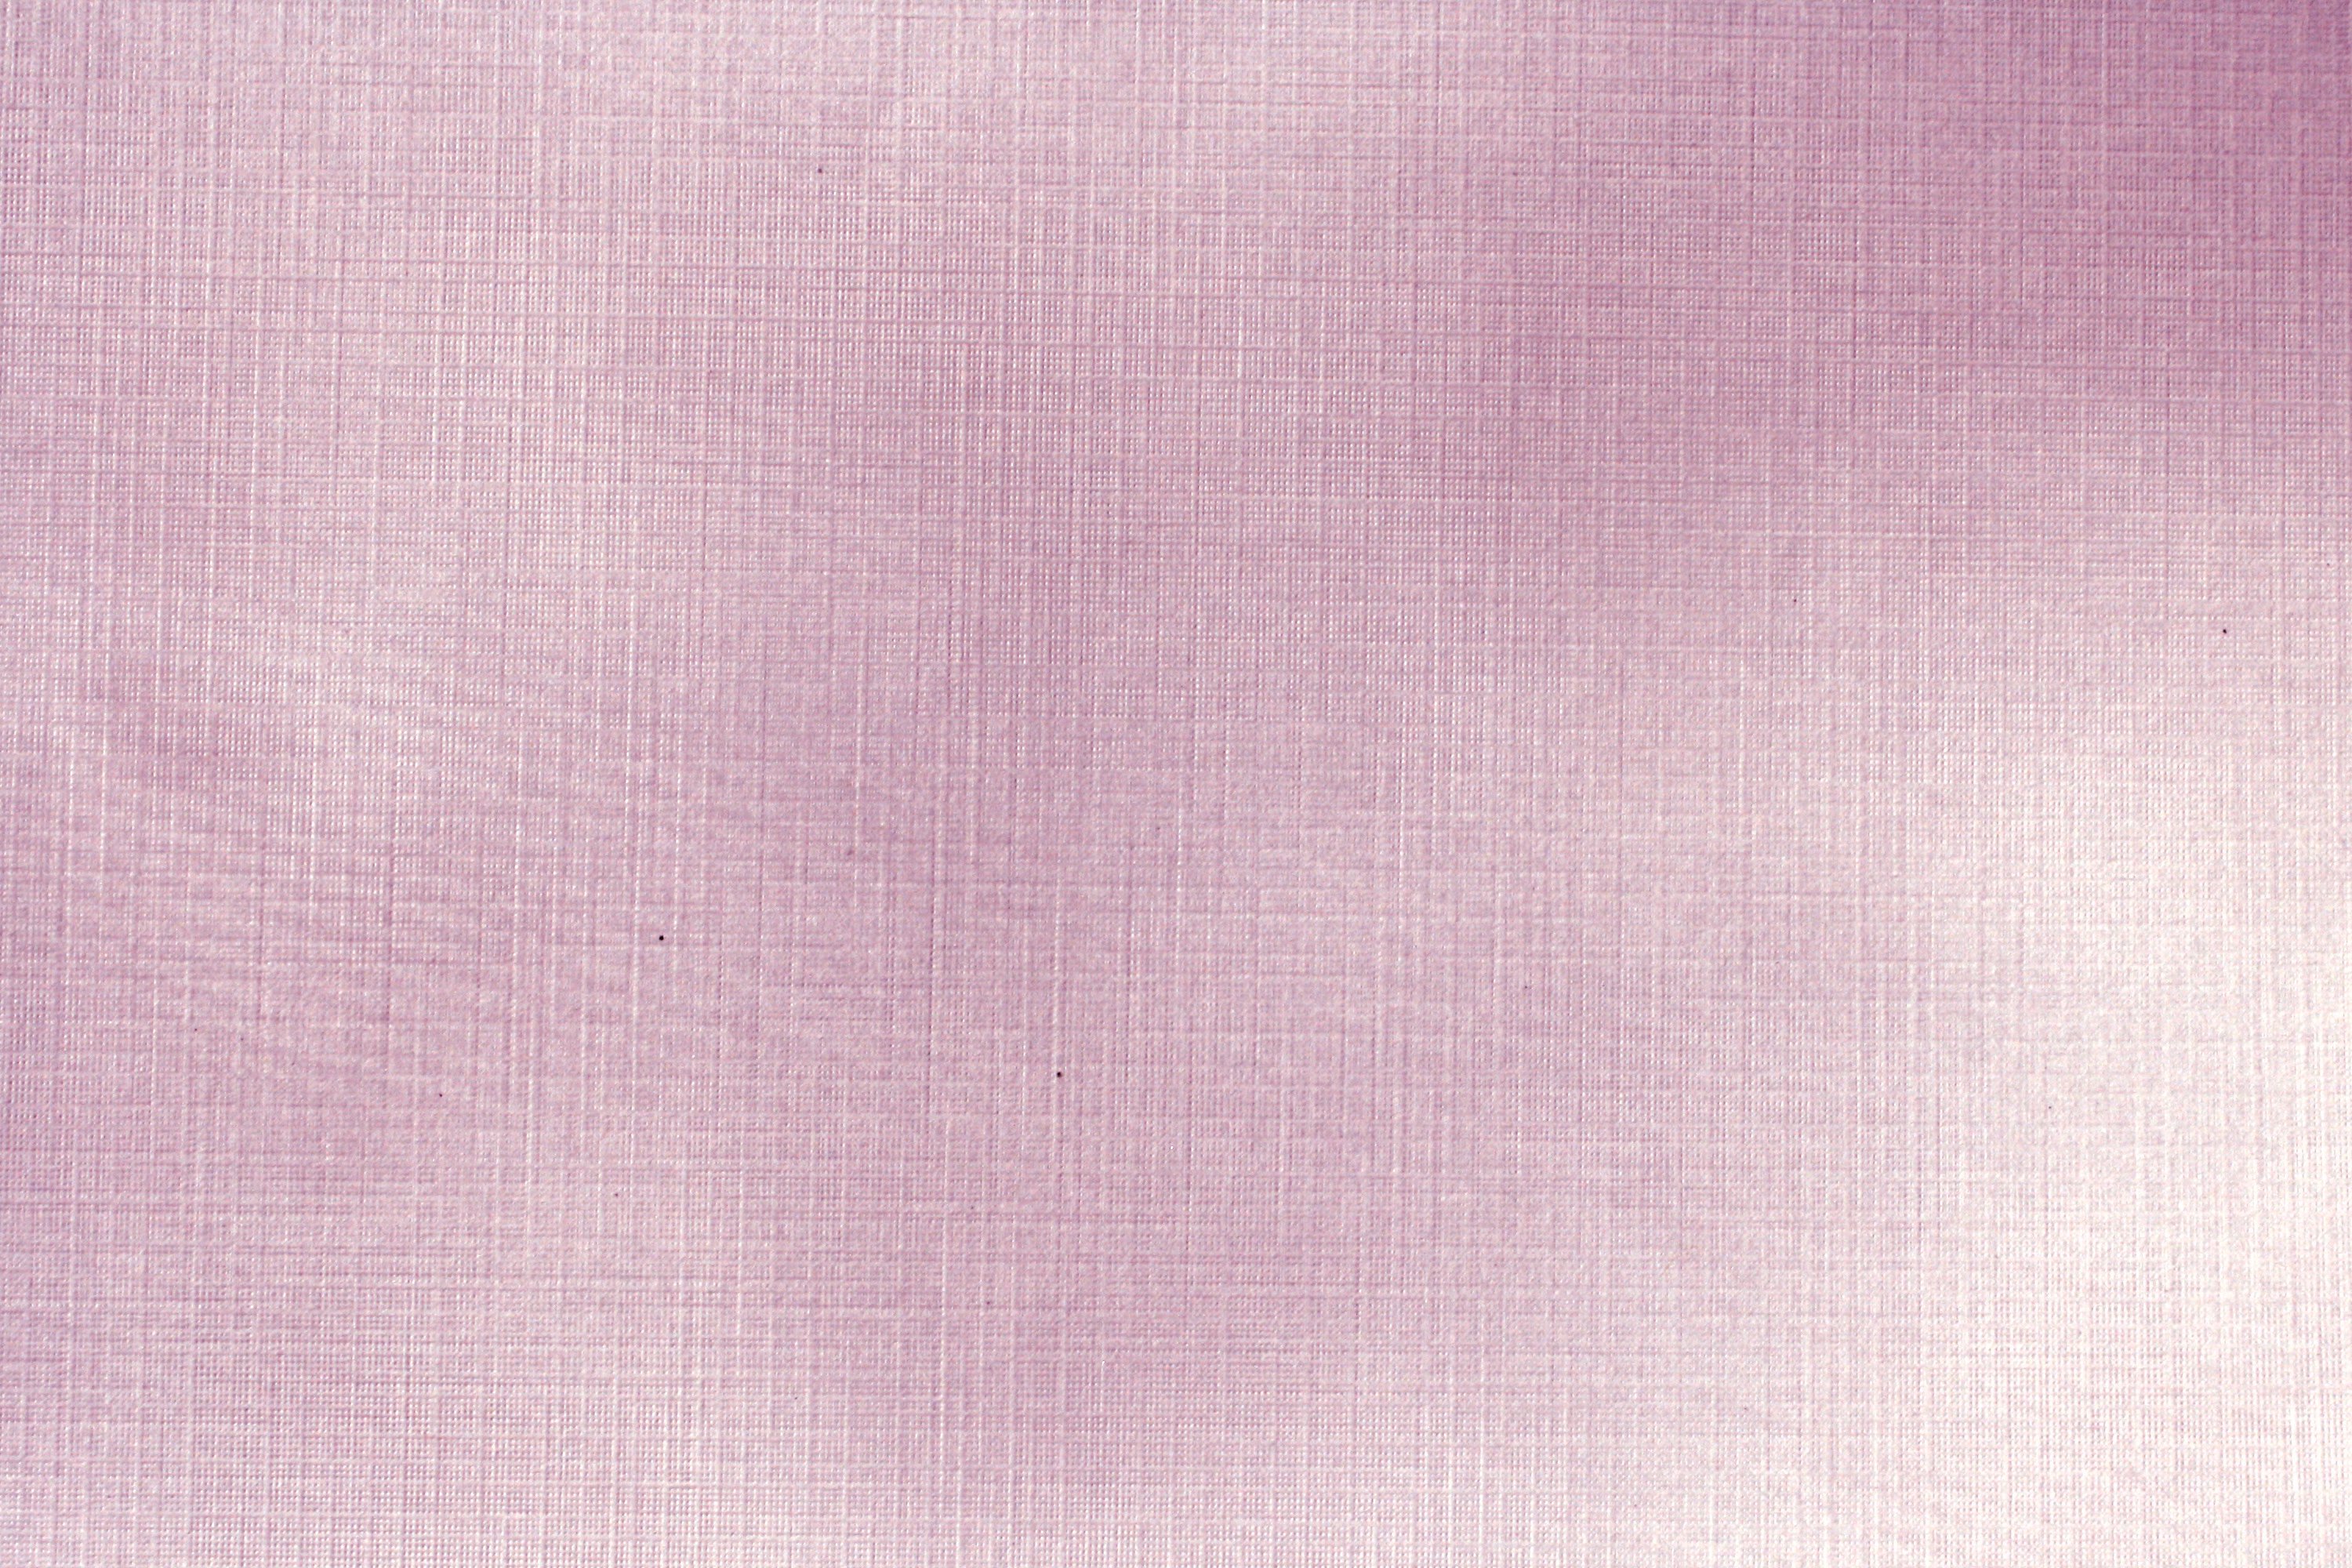 Mauve Linen Paper Texture Picture Photograph